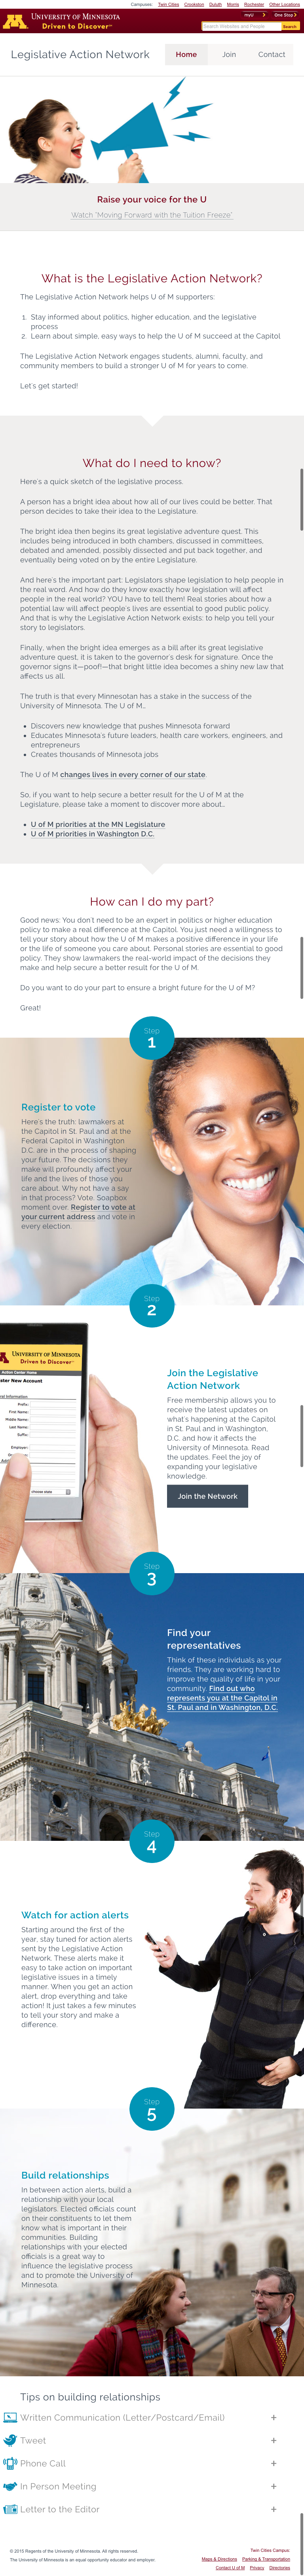 screenshot of Legislative Action Network website at 768-pixel width